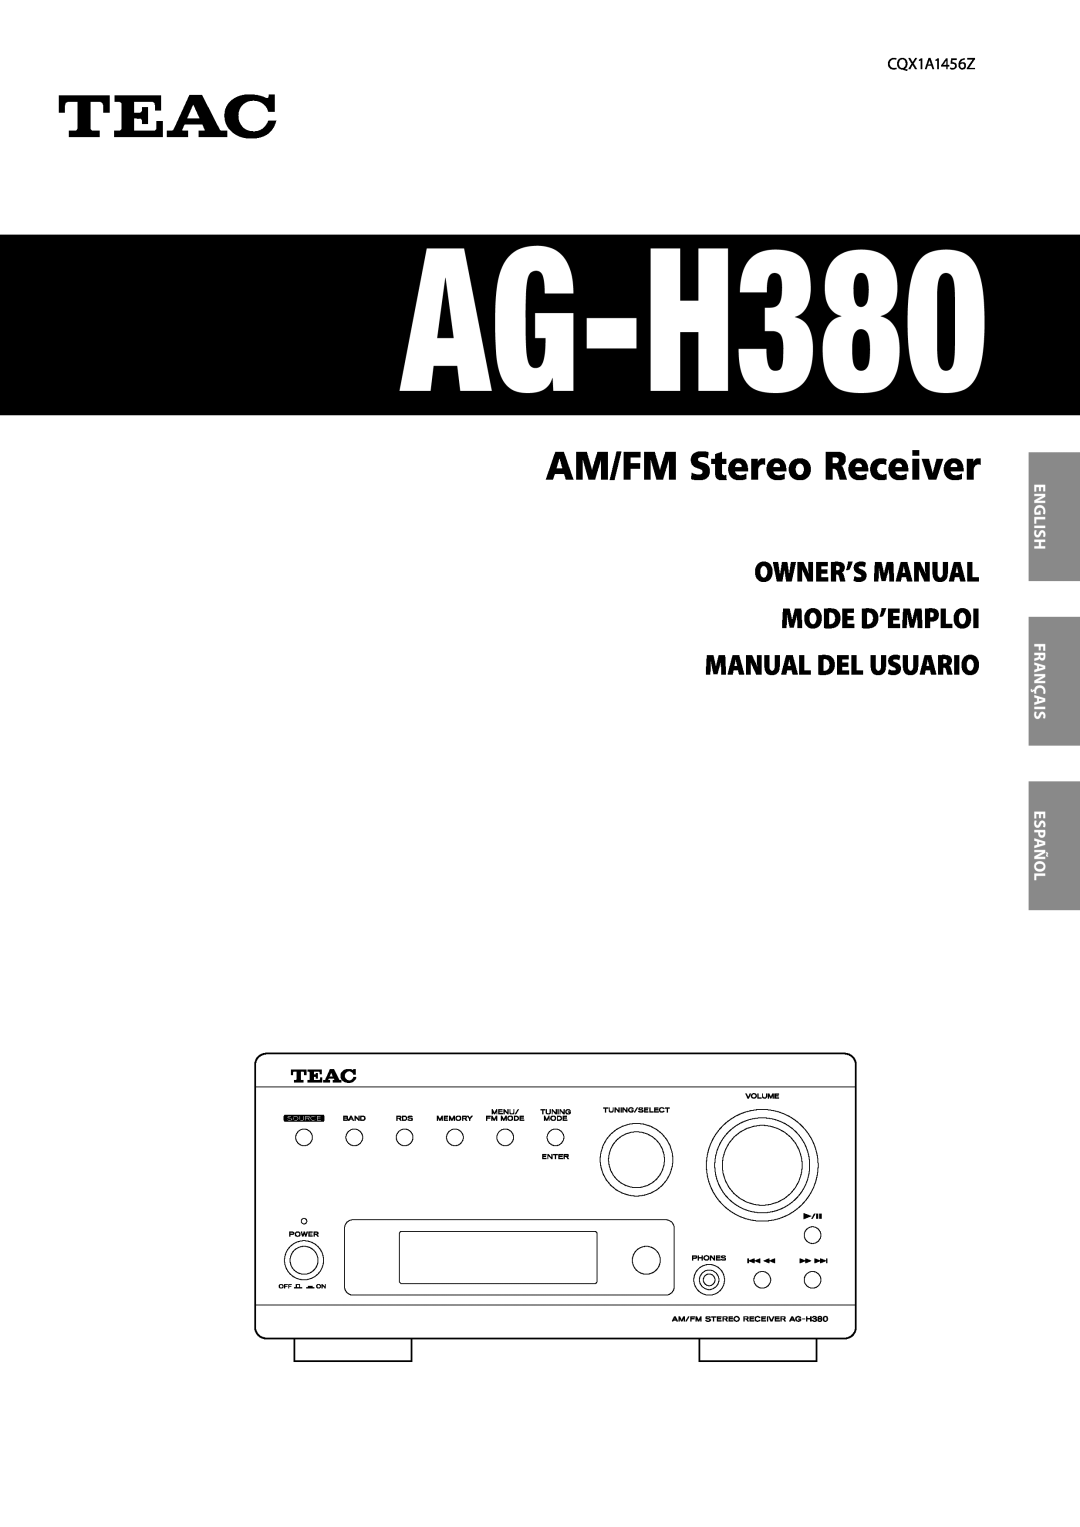 Teac AG-H380 owner manual English Français Español, AM/FM Stereo Receiver 